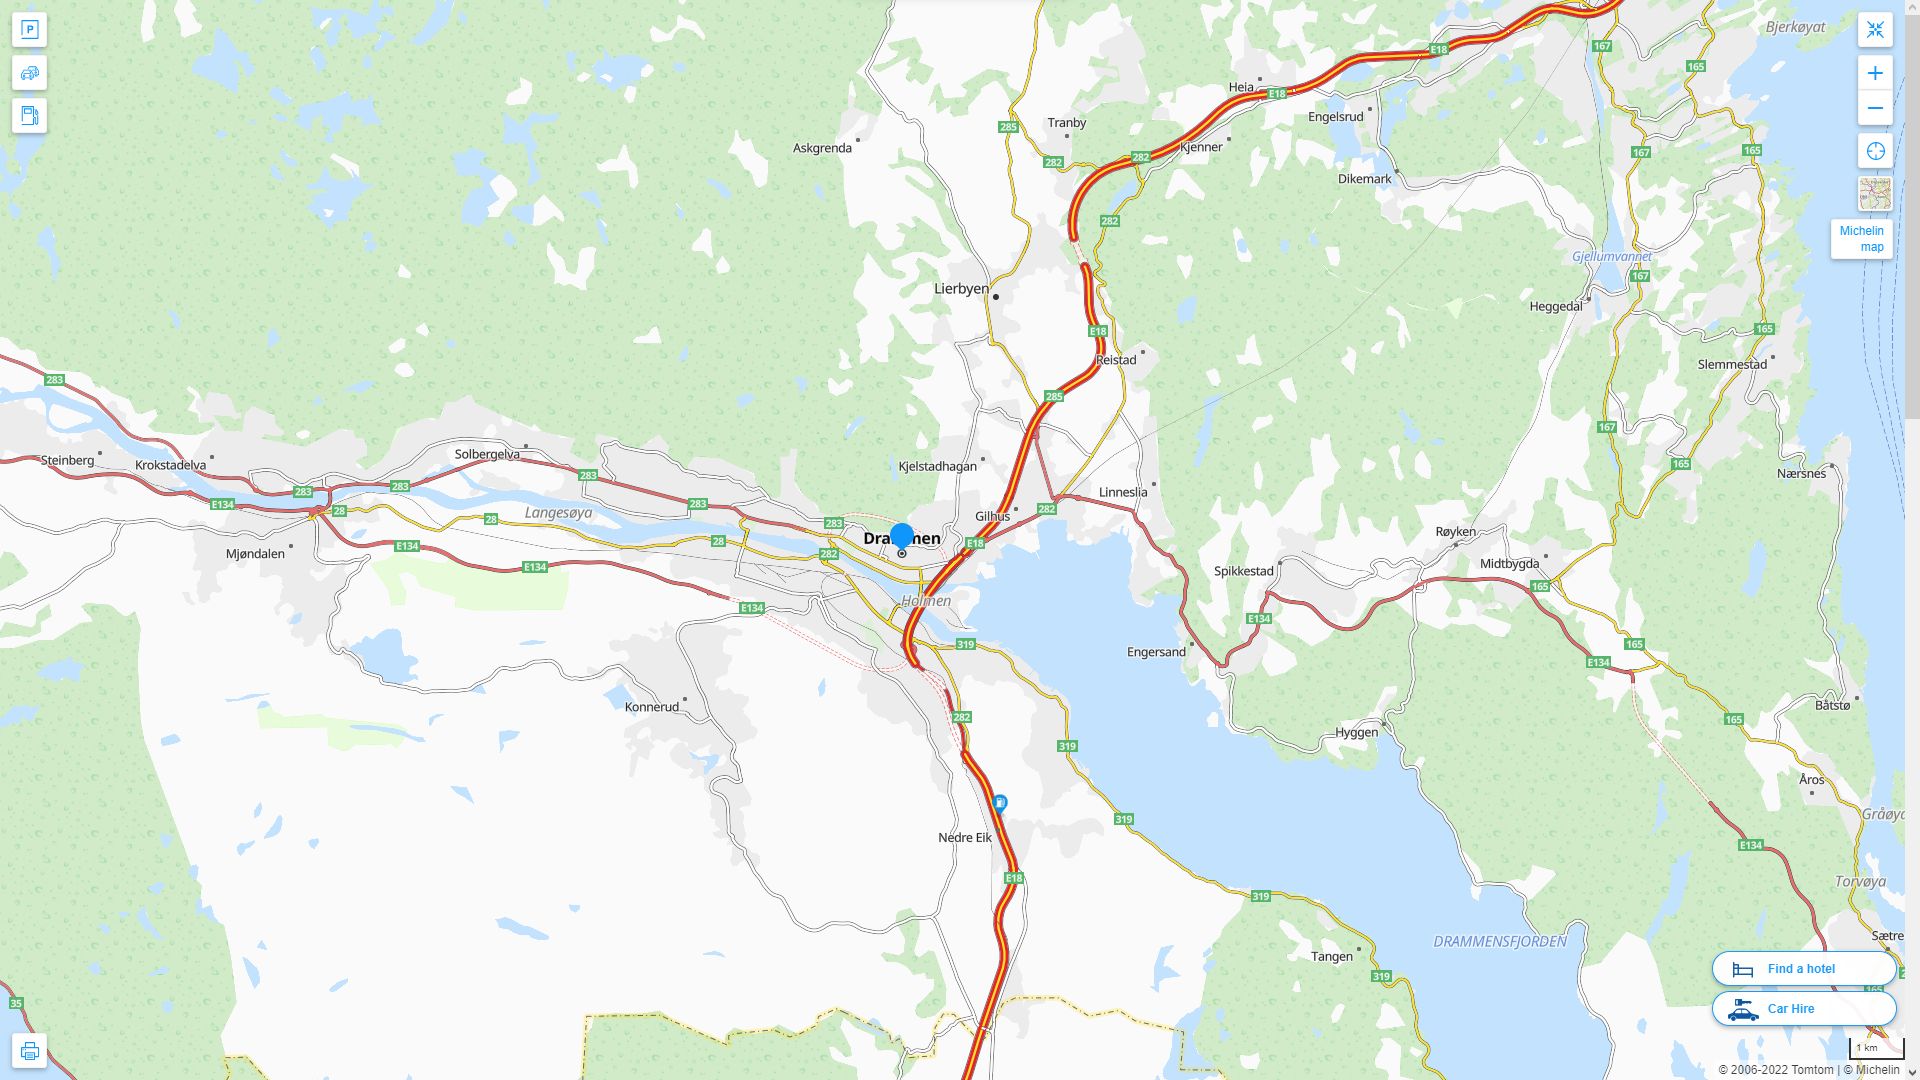 Drammen Norvege Autoroute et carte routiere